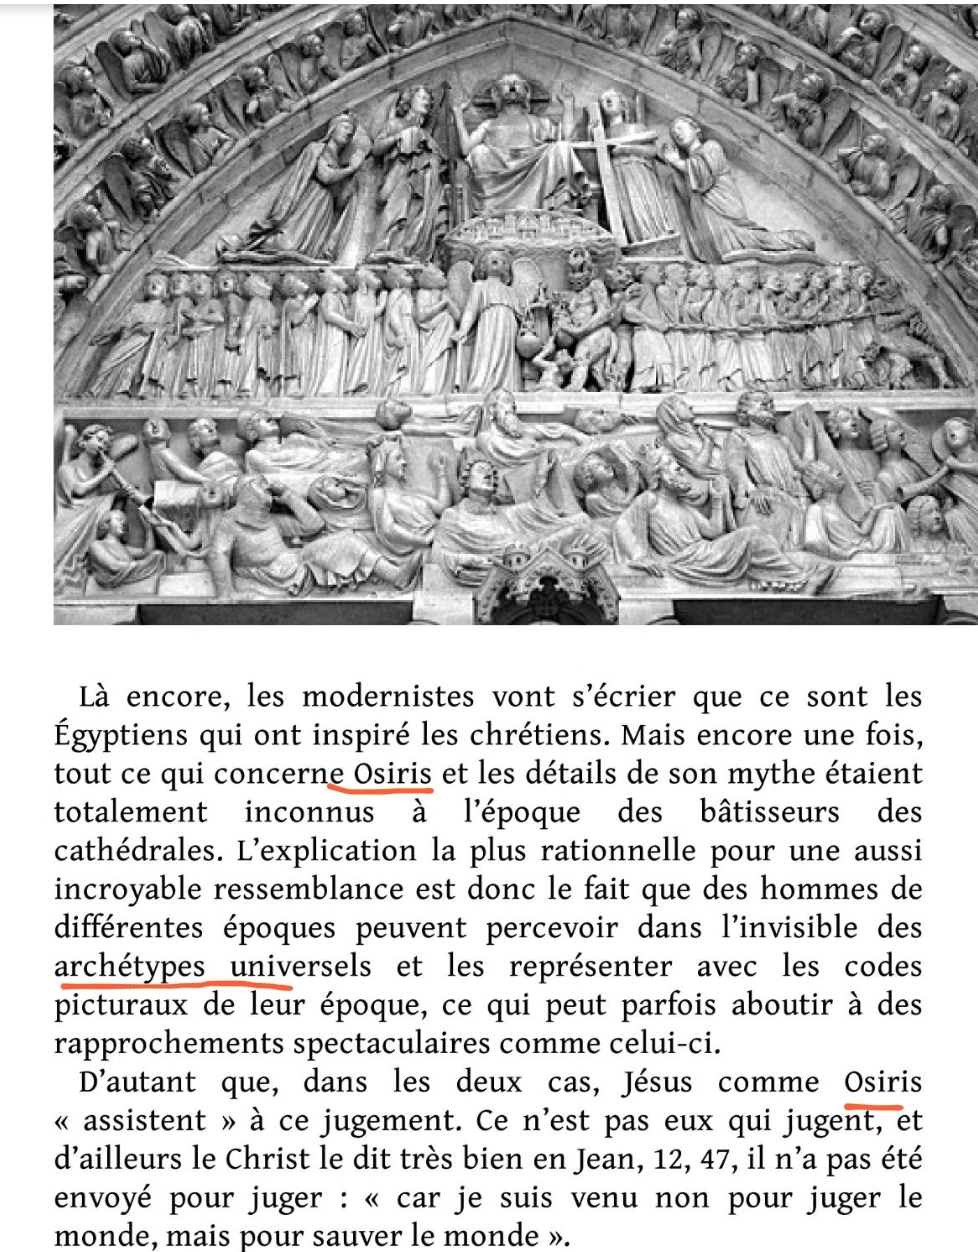 La franc-maçonnerie, la Gnose et le gnosticisme.  - Page 6 Scree602